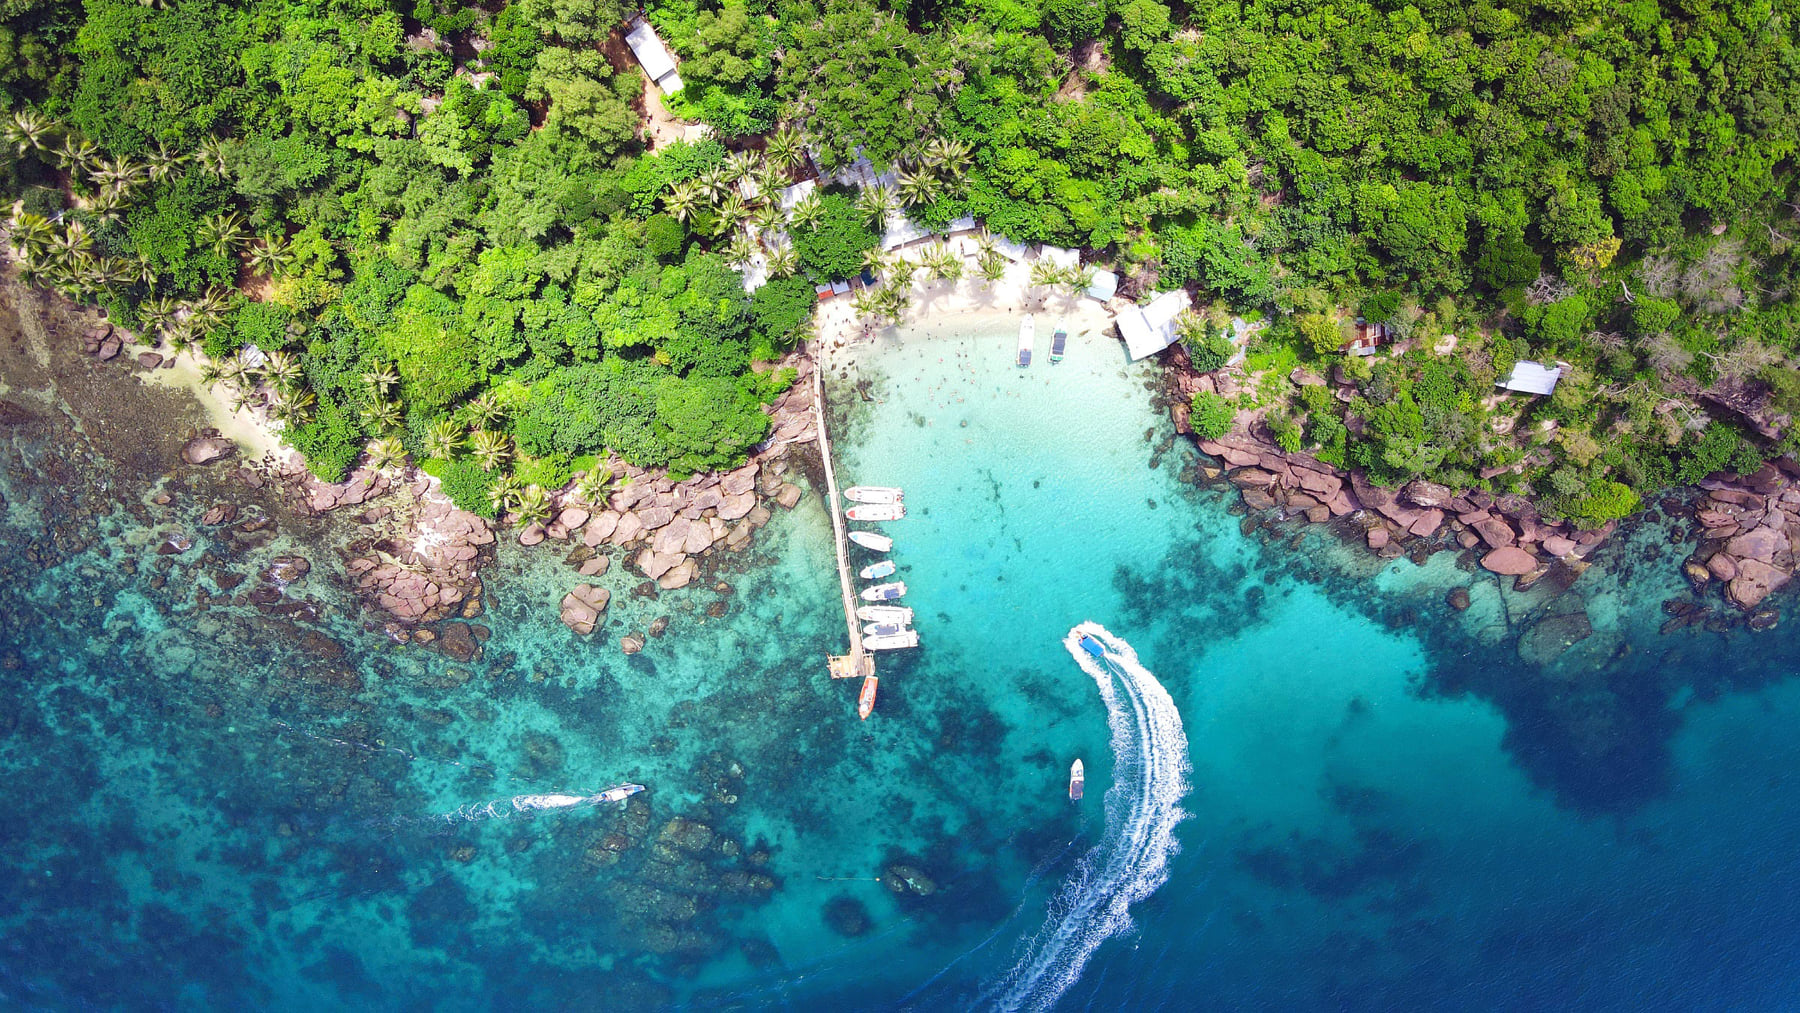 Hòn Móng Tay nổi lên như một thiên đường, được ví như “Maldives tại Việt Nam”